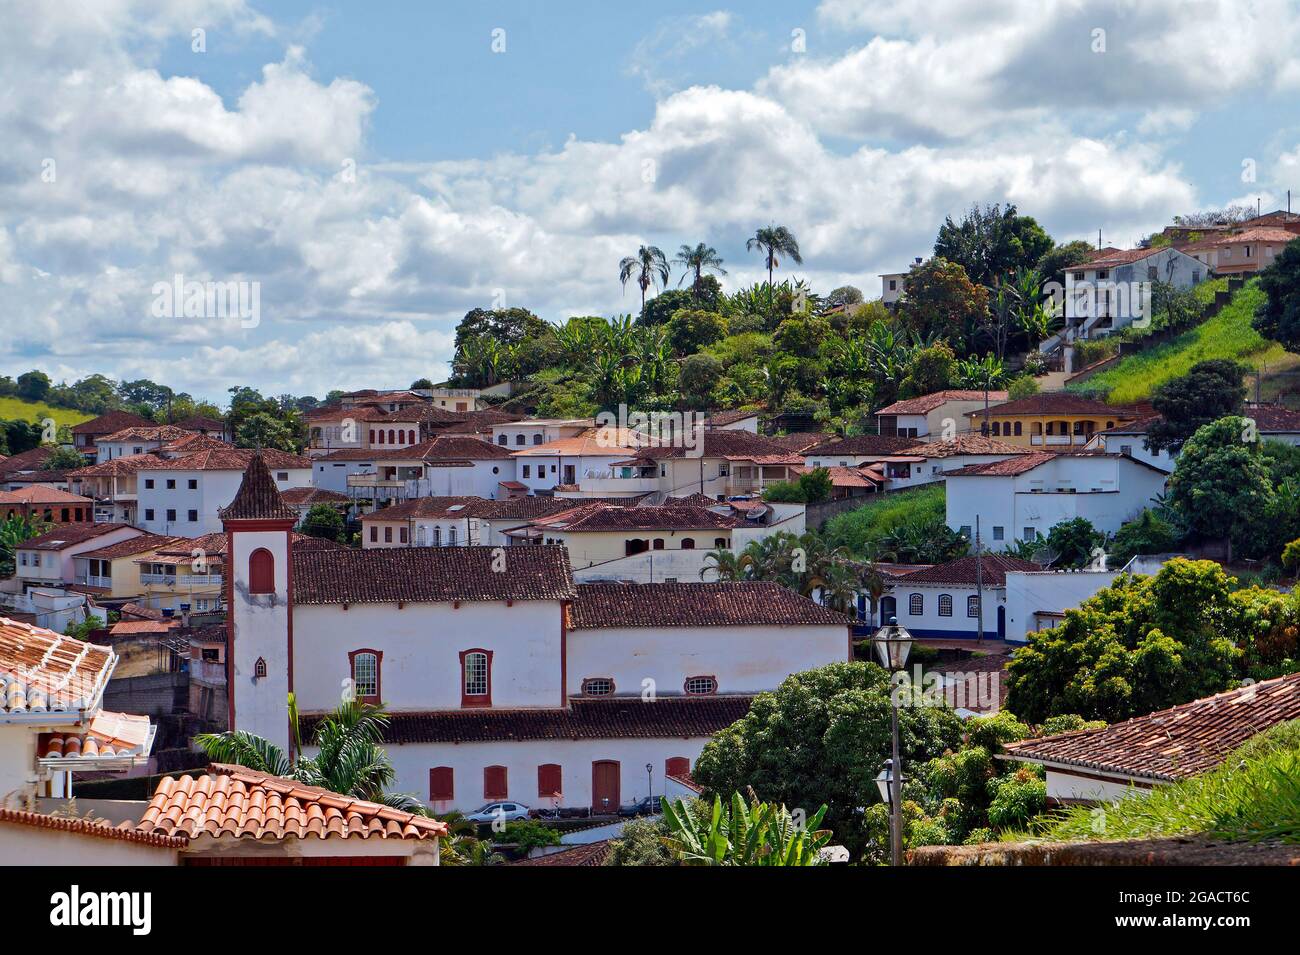 Vue partielle sur Cerro, ville historique de Minas Gerais, Brésil Banque D'Images